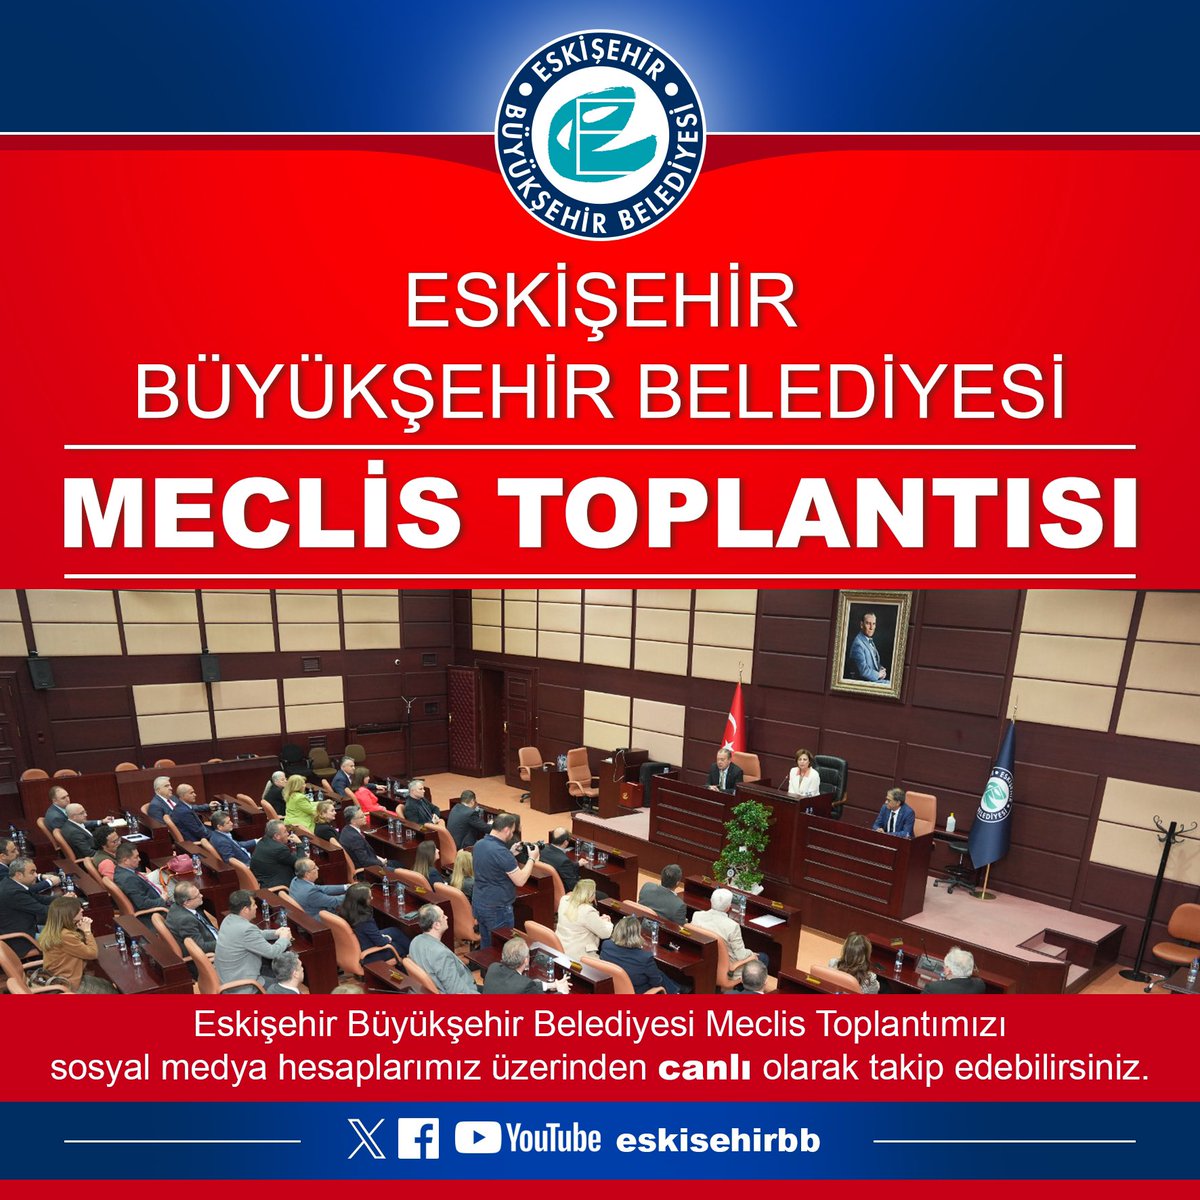 Sevgili hemşehrilerimiz, Eskişehir Büyükşehir Belediyesi Mayıs Ayı Meclis Toplantımızın 1'inci oturumunu 10 Mayıs Cuma (Bugün) saat 16.00'da Meclis Salonumuzda gerçekleştireceğiz. Sizler de meclis toplantımıza katılabilir veya canlı olarak belediyemizin Facebook, Youtube ve…